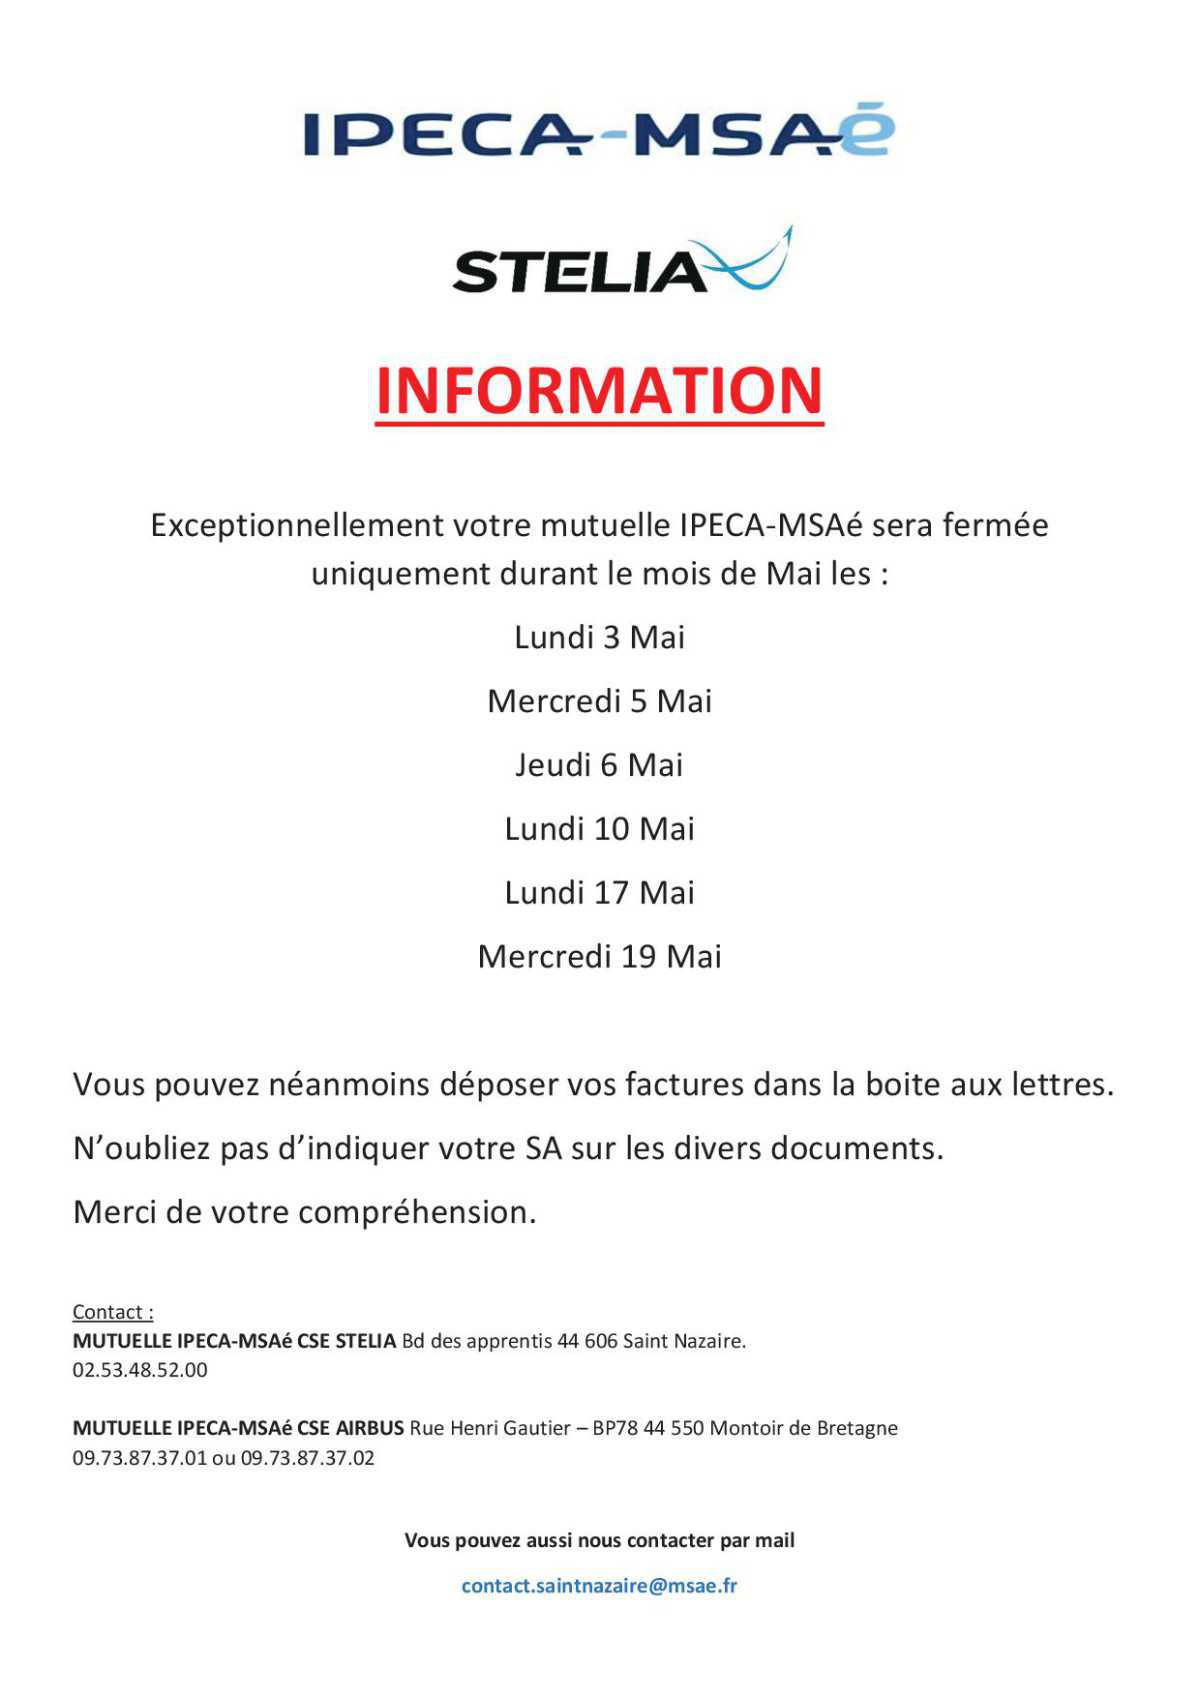 Information IPECA - MSAE